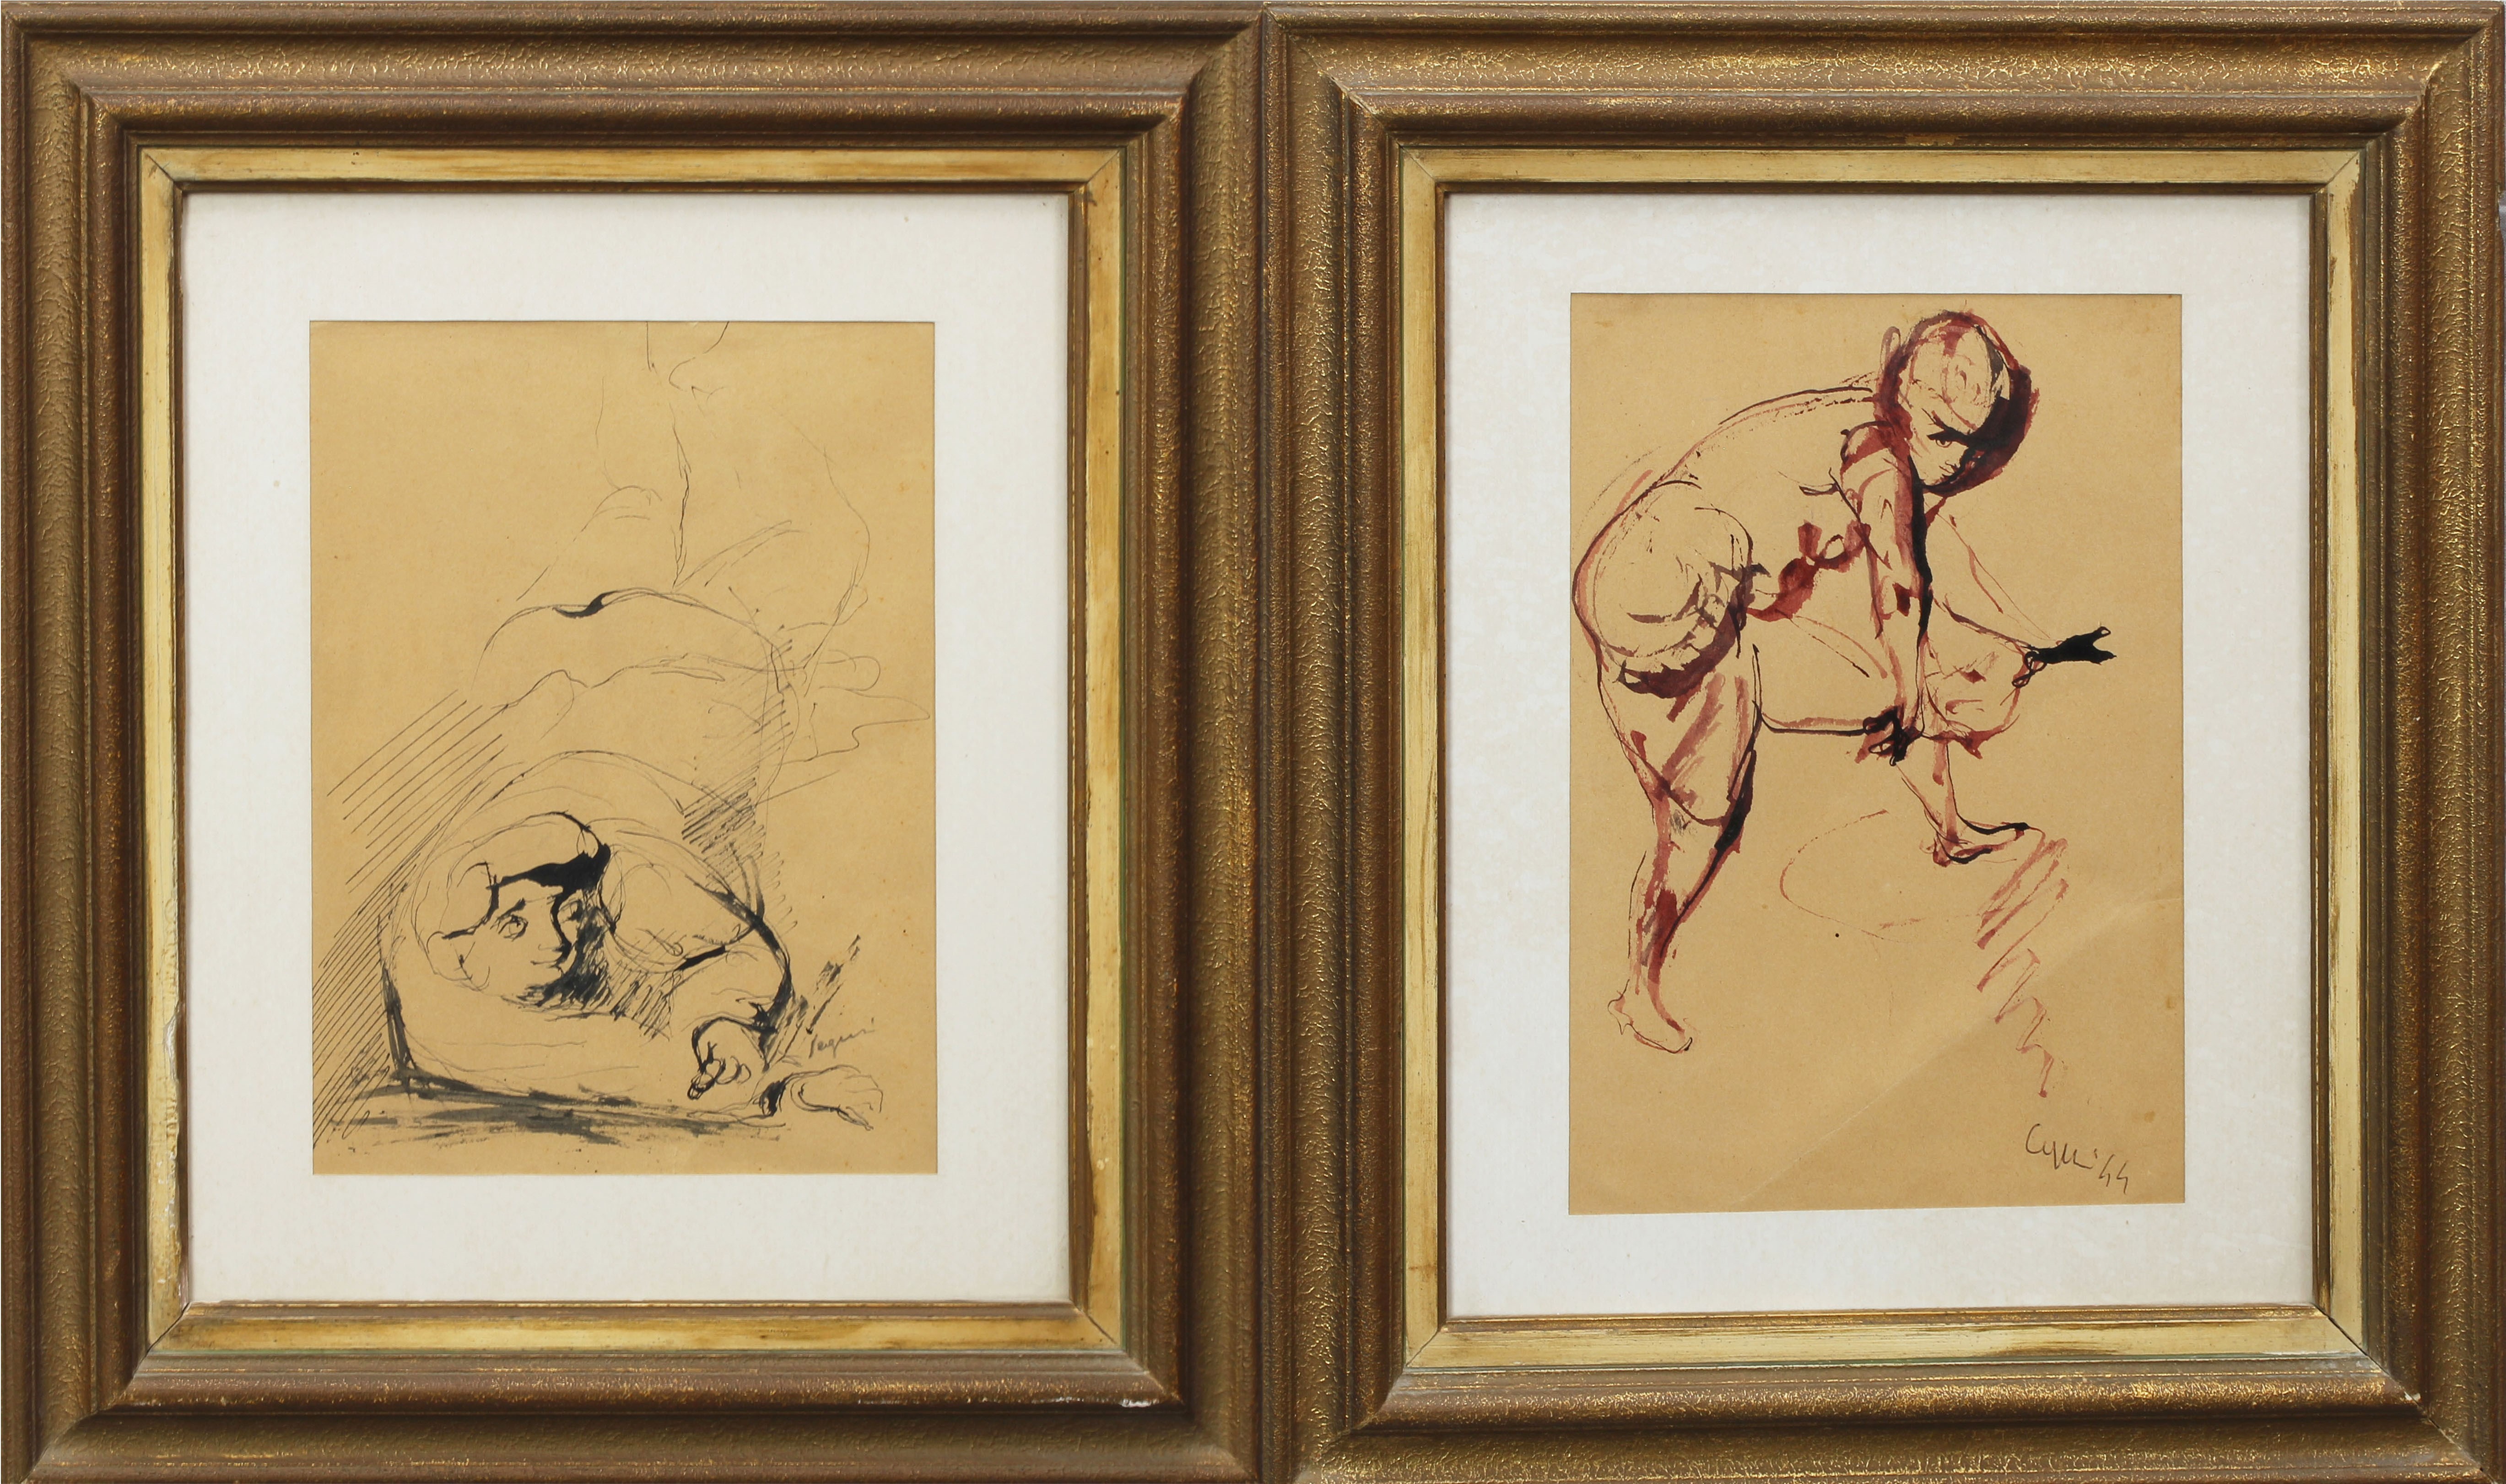 Nudi di donna, coppia di acquerelli, a firma Seguri 44 e una solo Seguri, cm. 17x24 circa - Image 2 of 2